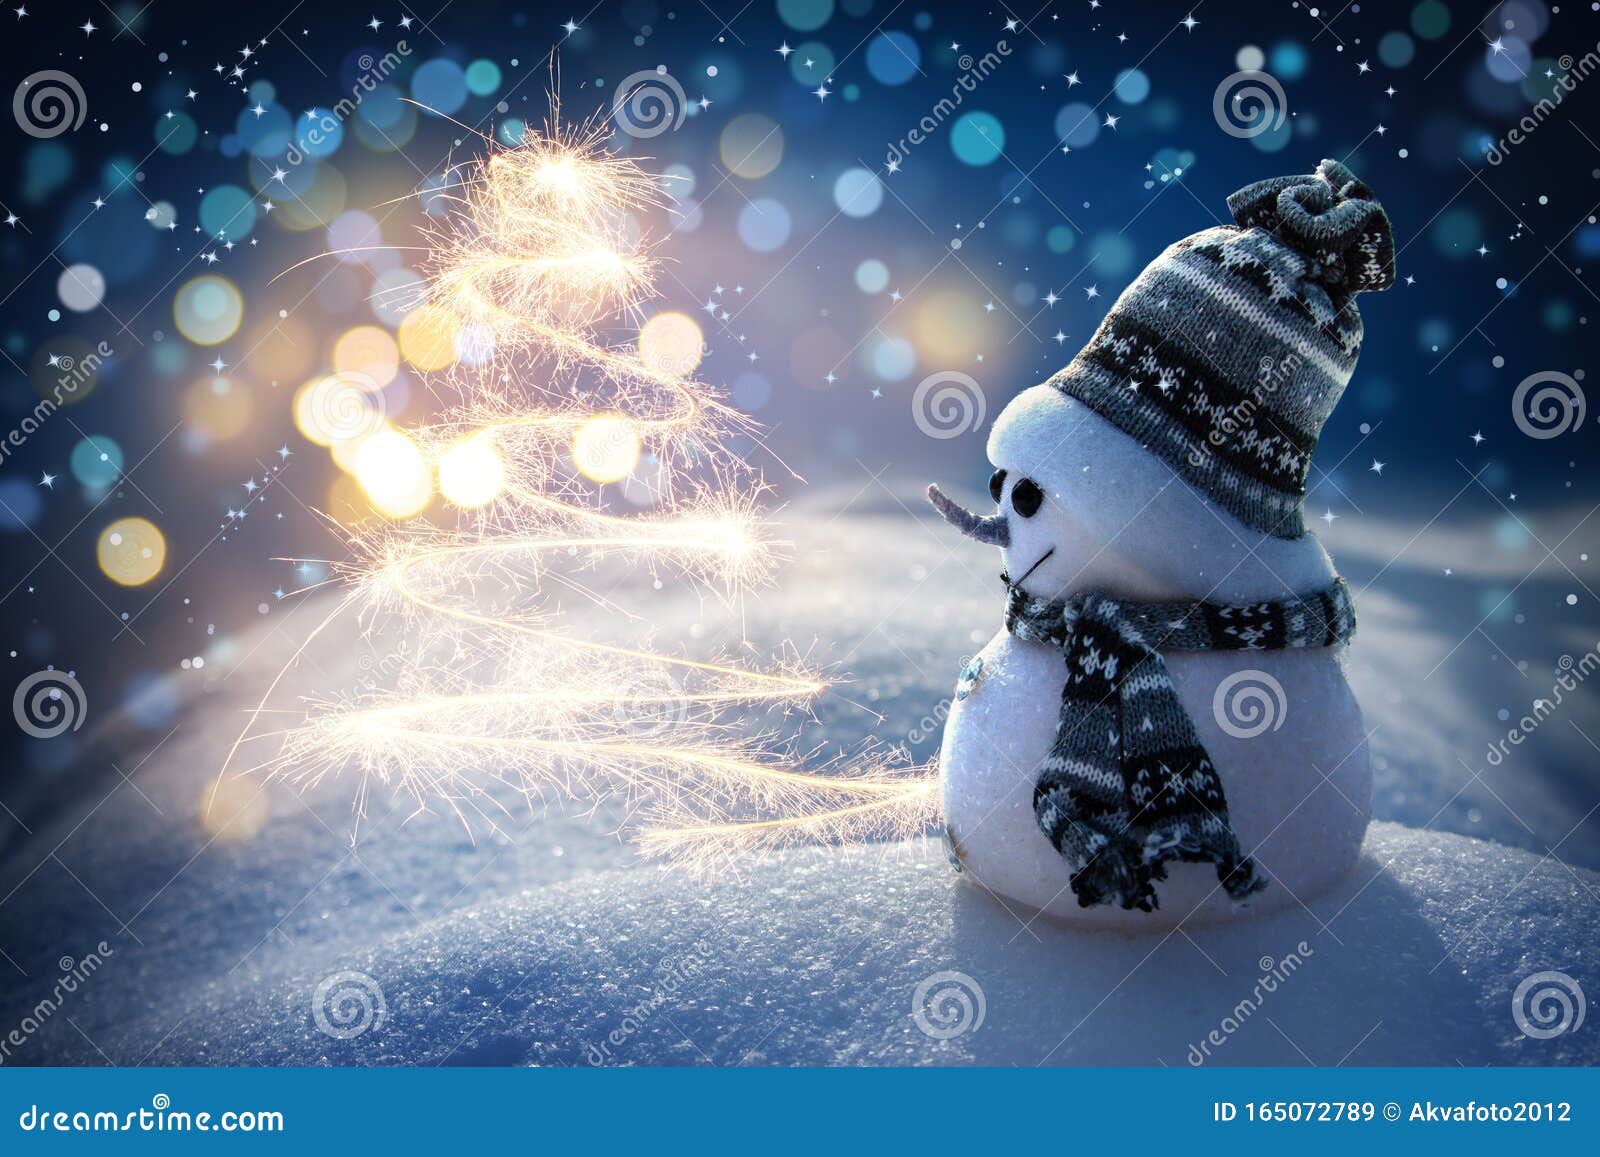 https://thumbs.dreamstime.com/z/feliz-mu%C3%B1eco-de-nieve-parado-en-el-paisaje-navide%C3%B1o-invierno-navidad-y-tarjeta-saludo-a%C3%B1o-nuevo-con-felicitaci%C3%B3n-165072789.jpg